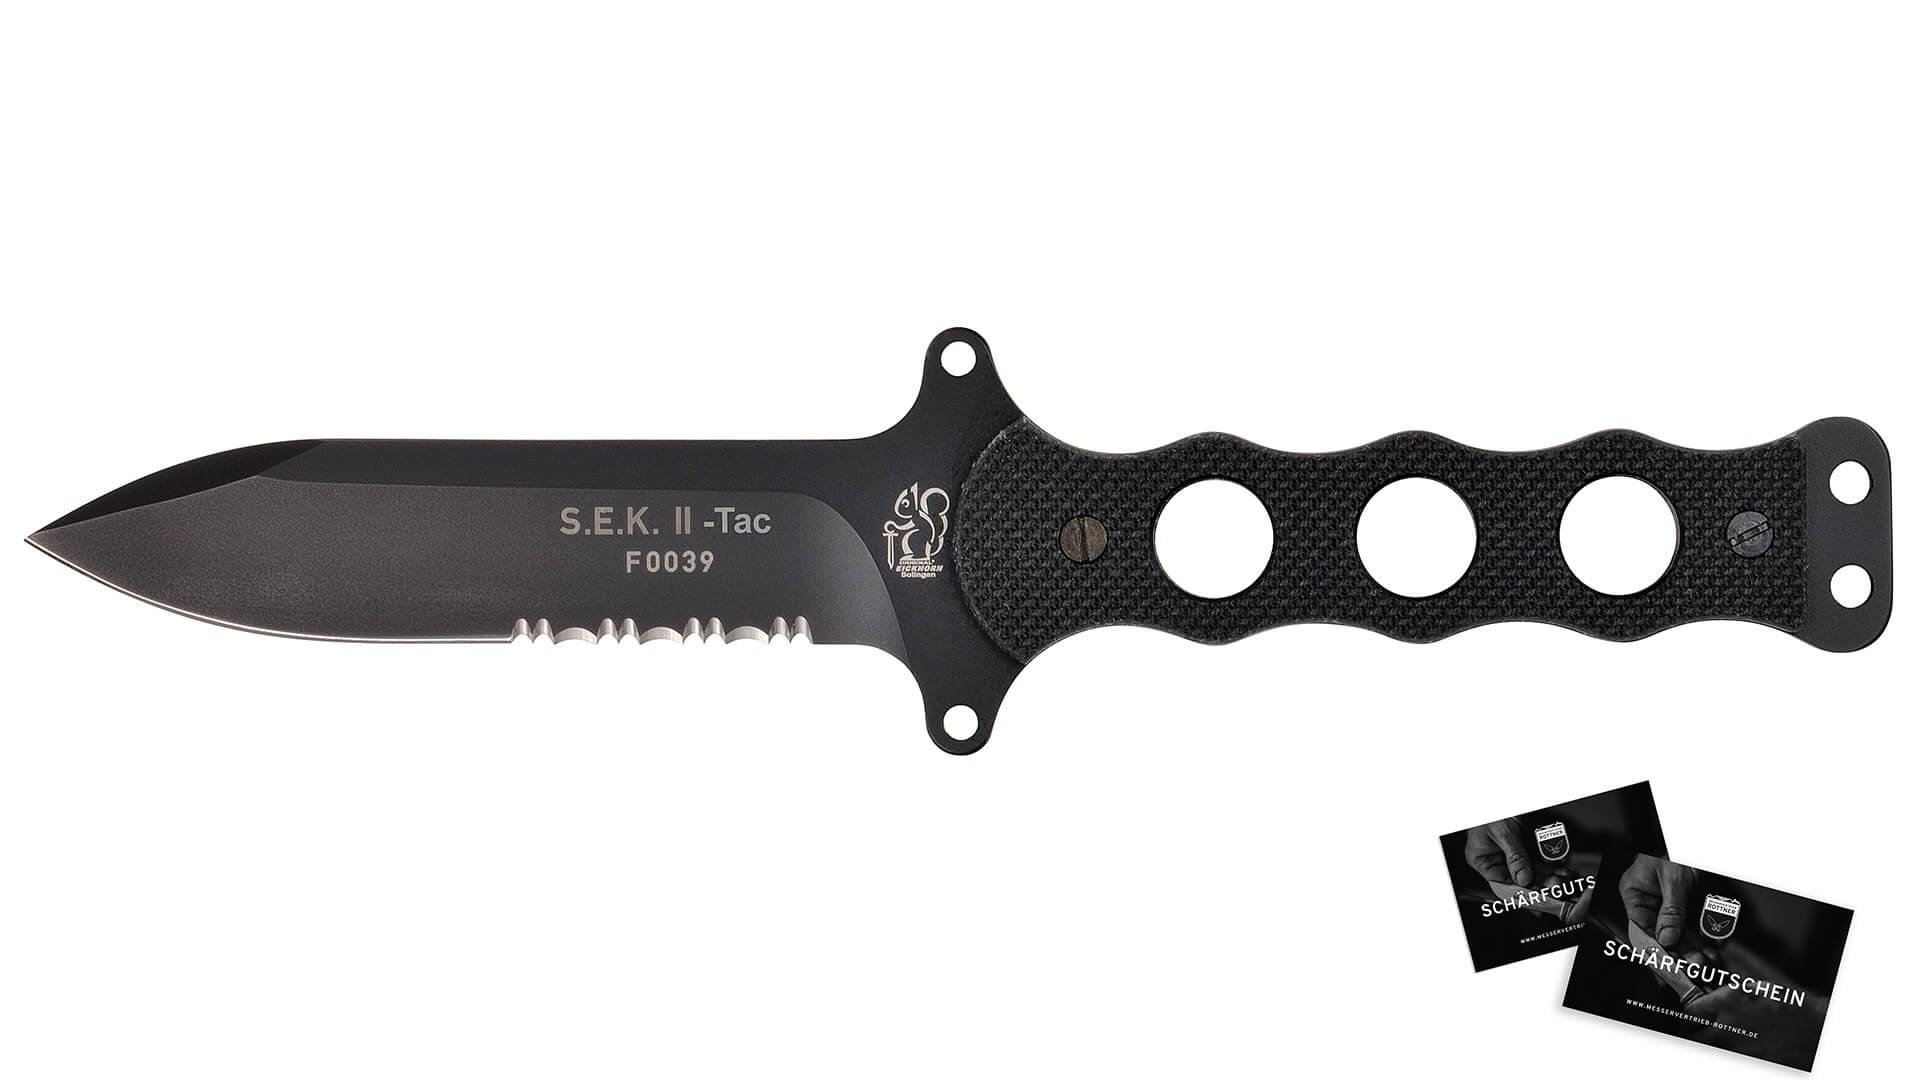 eickhorn-sek-2-tactical-tac-knife-combat-knife-buy